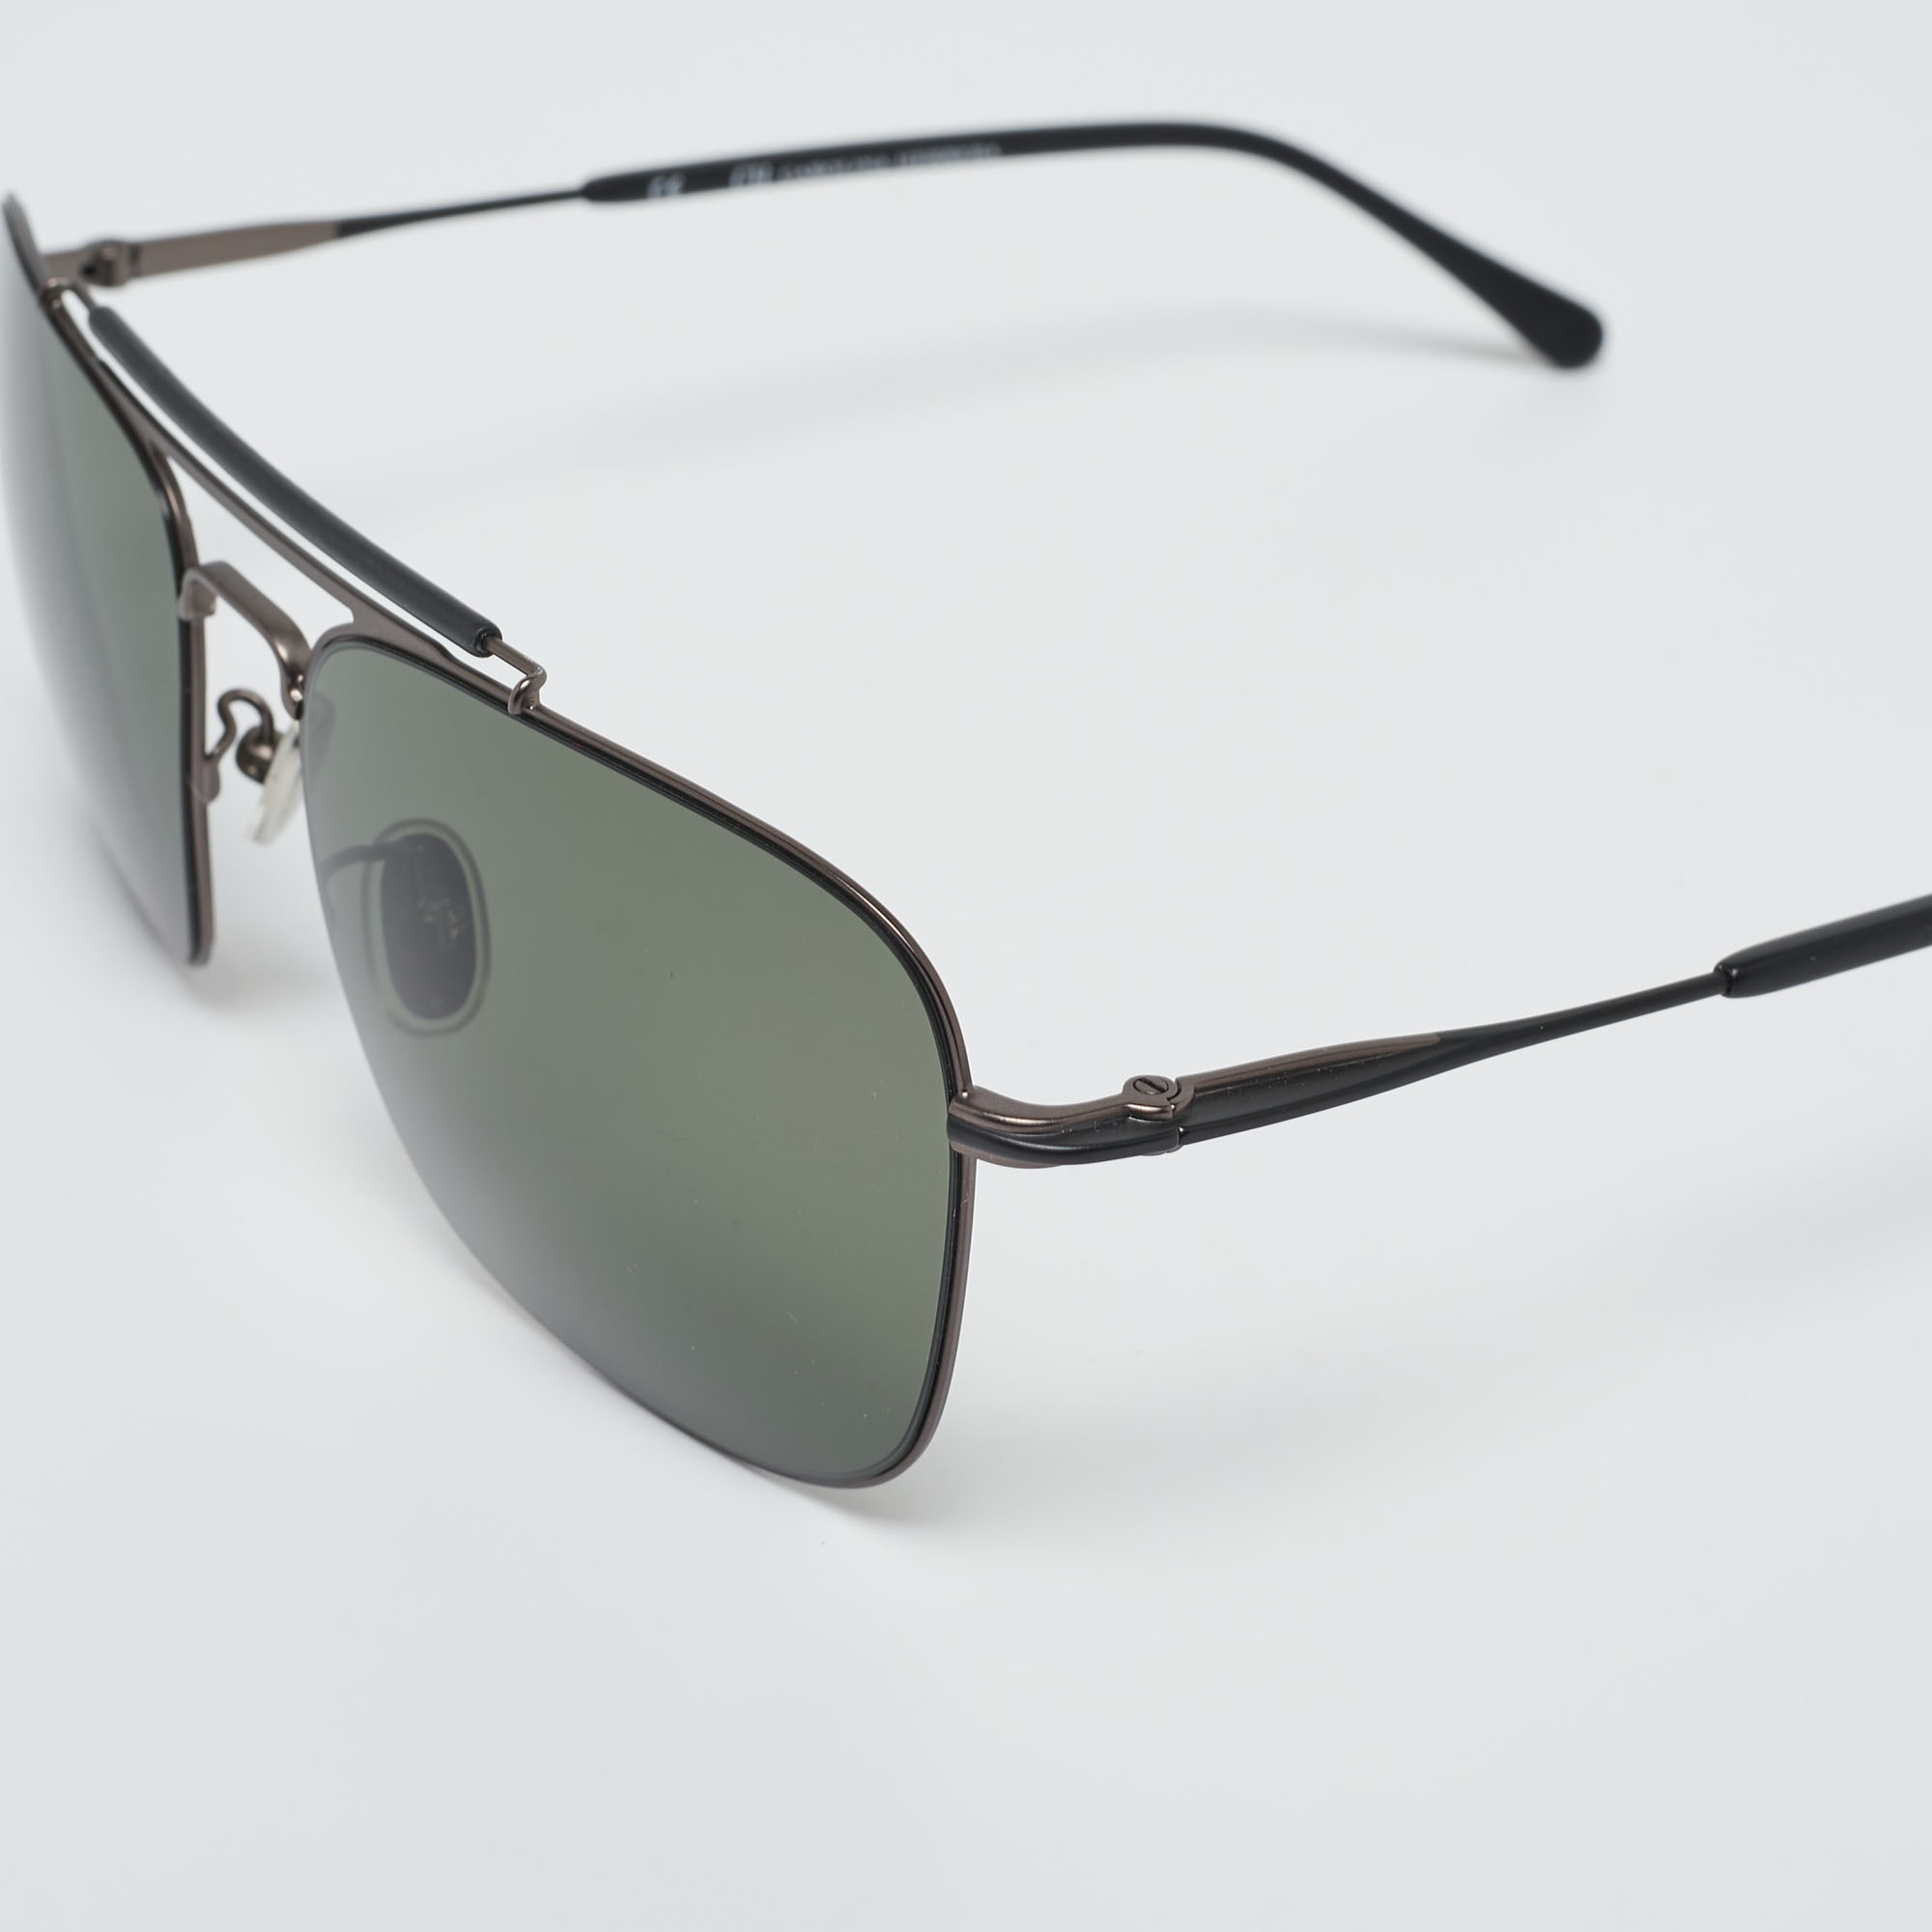 

Carolina Herrera Black SHE159 Aviator Sunglasses